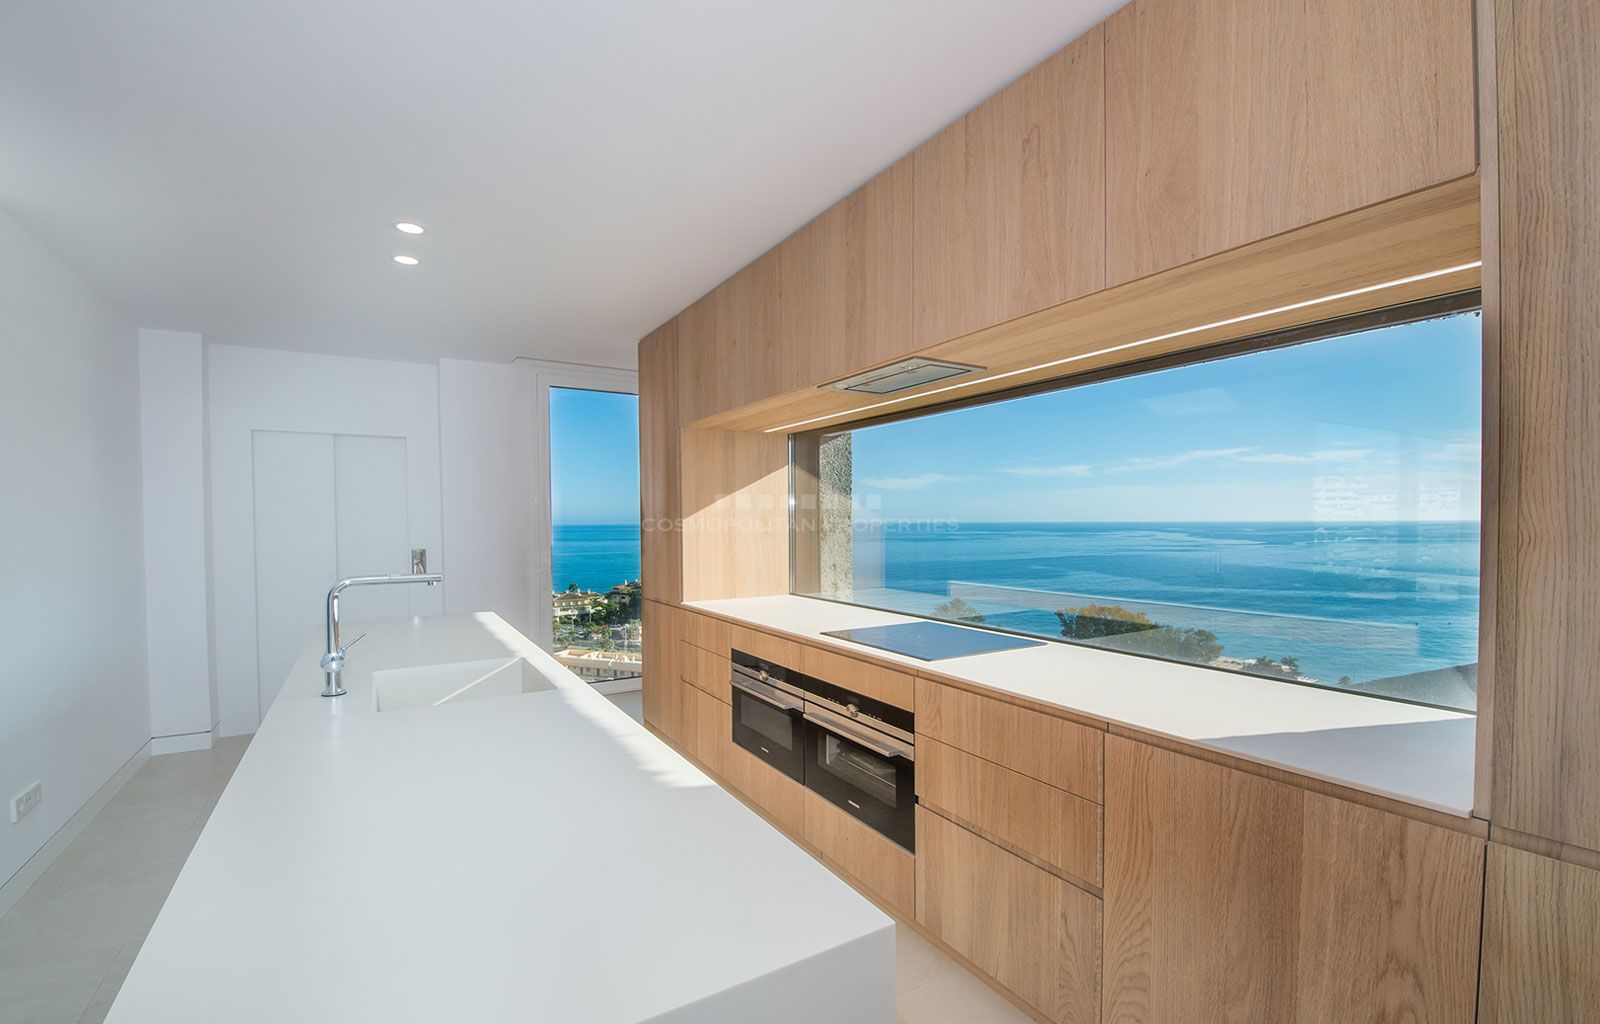 Apartamentos modernos con fabulosas vistas al mar y junto a la playa!